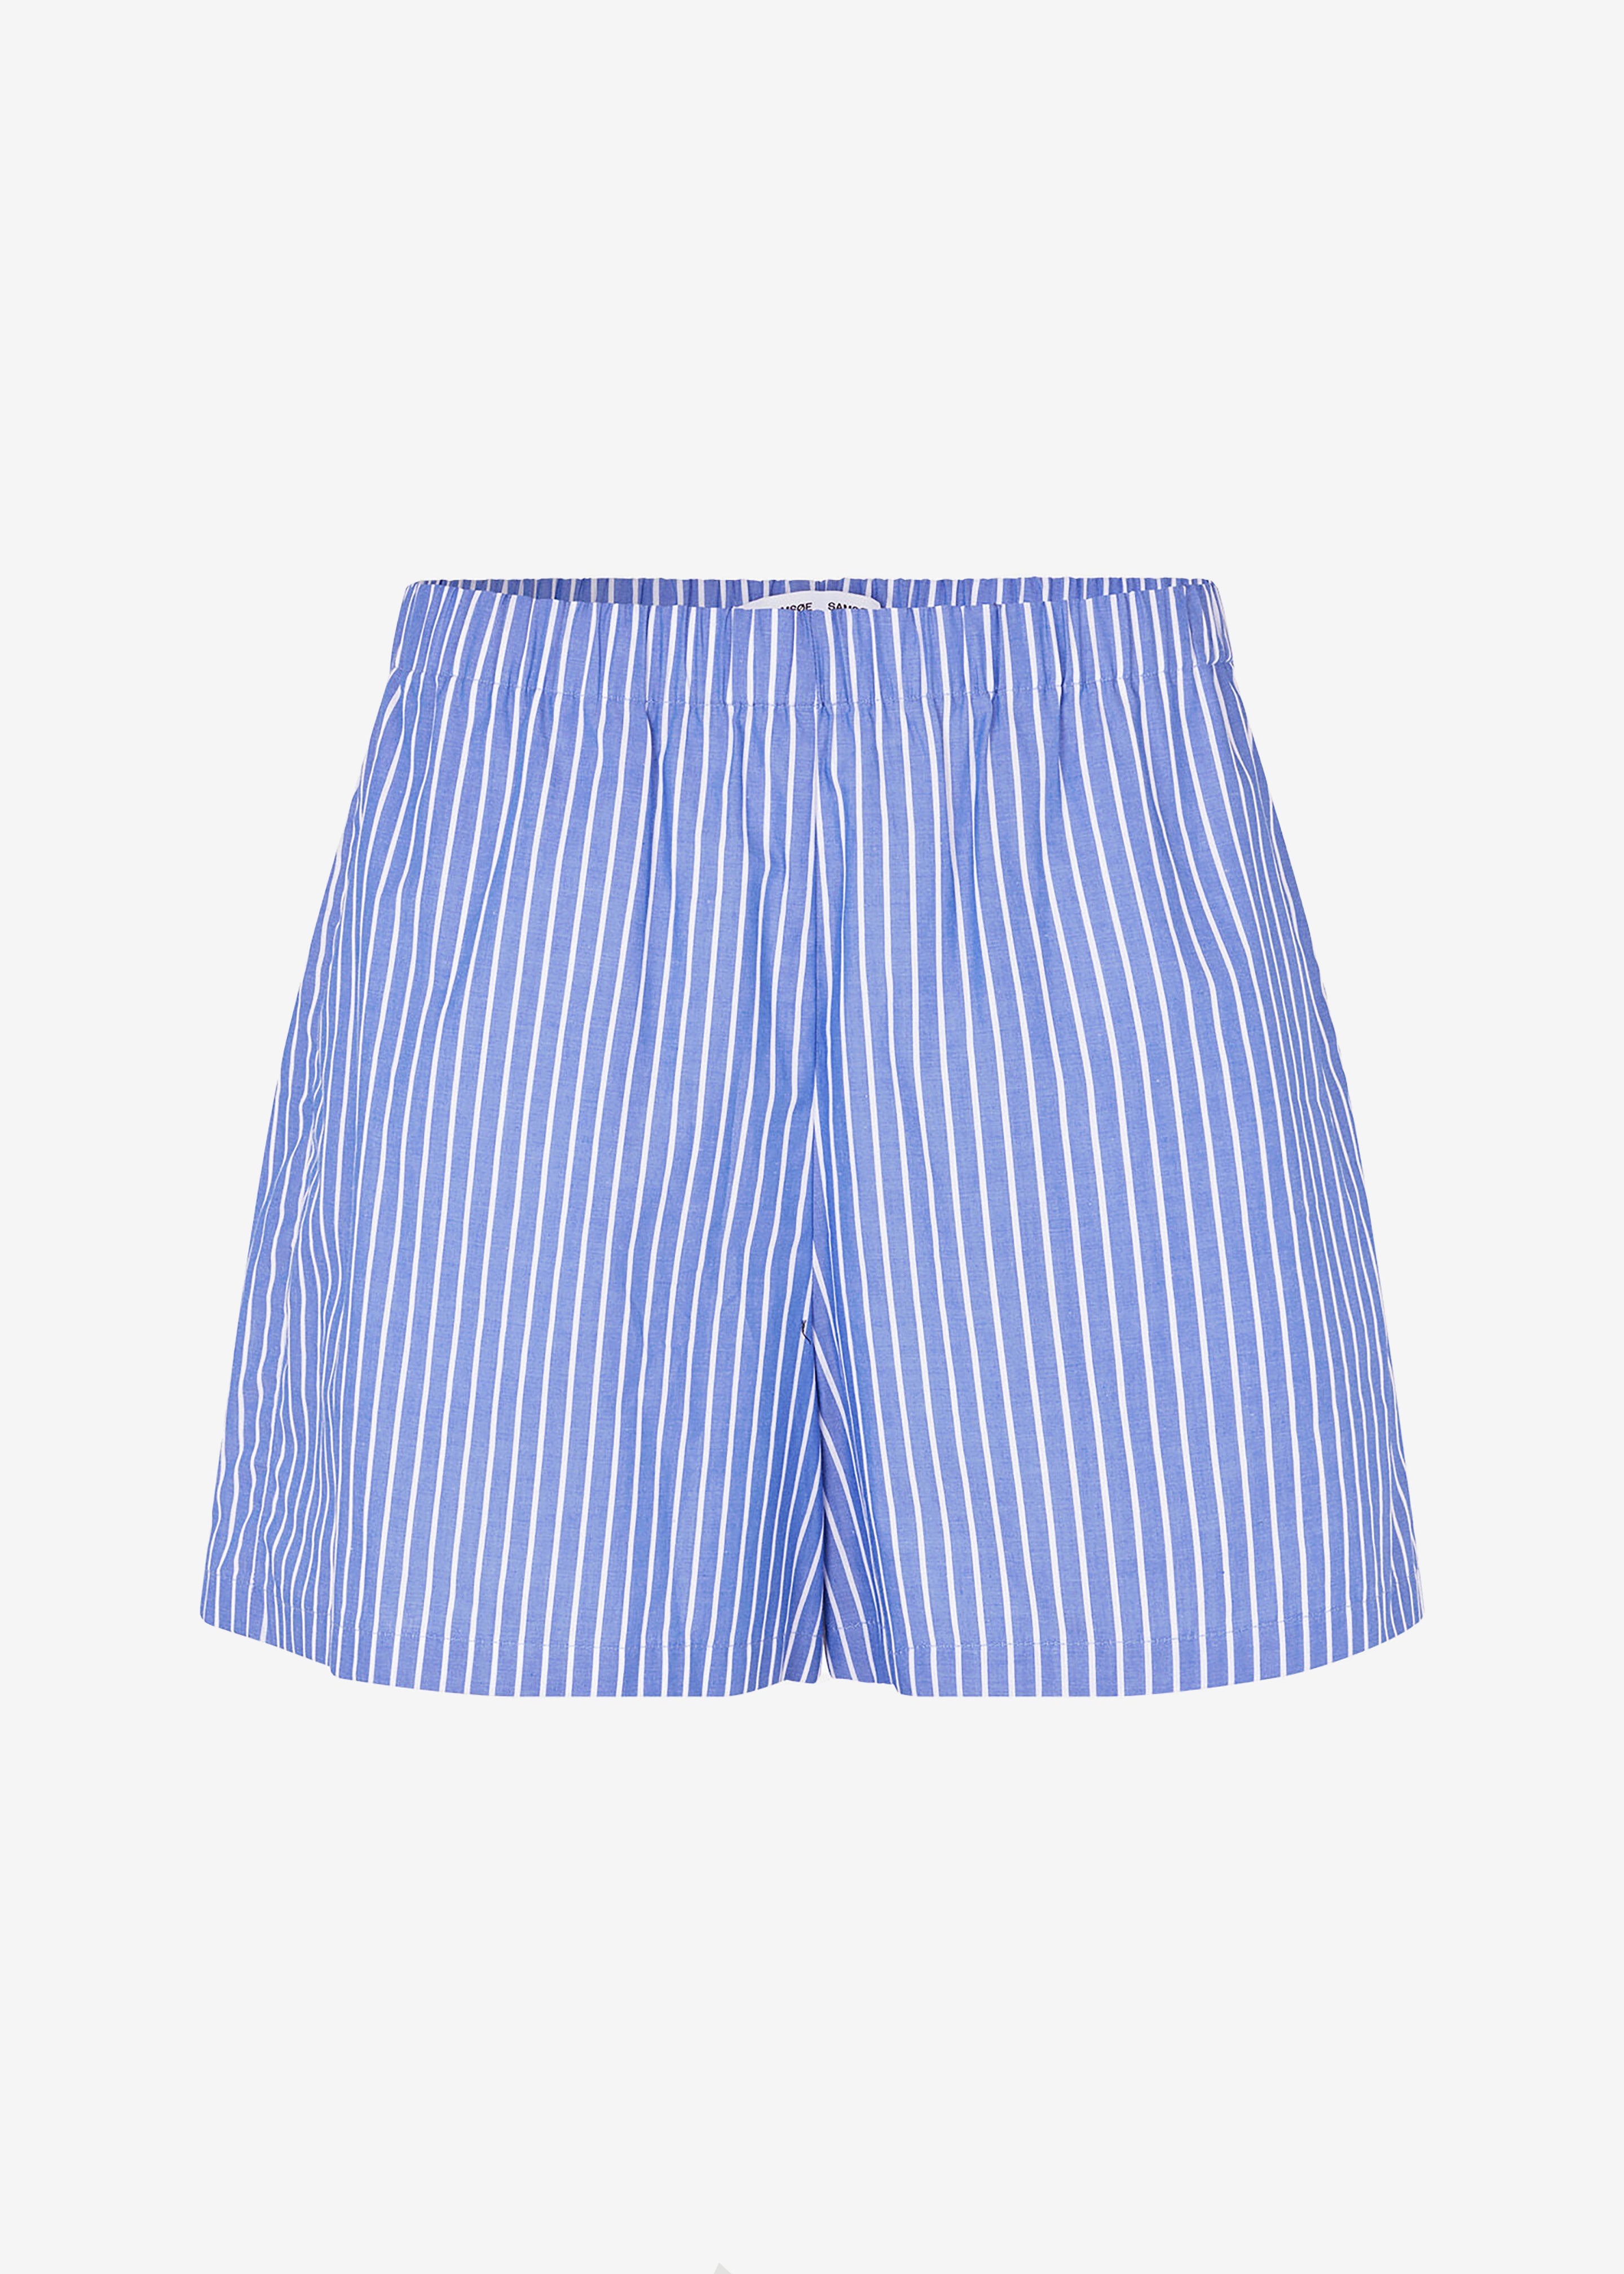 Samsøe Samsøe Maren Shorts - Blue White Stripe - 6